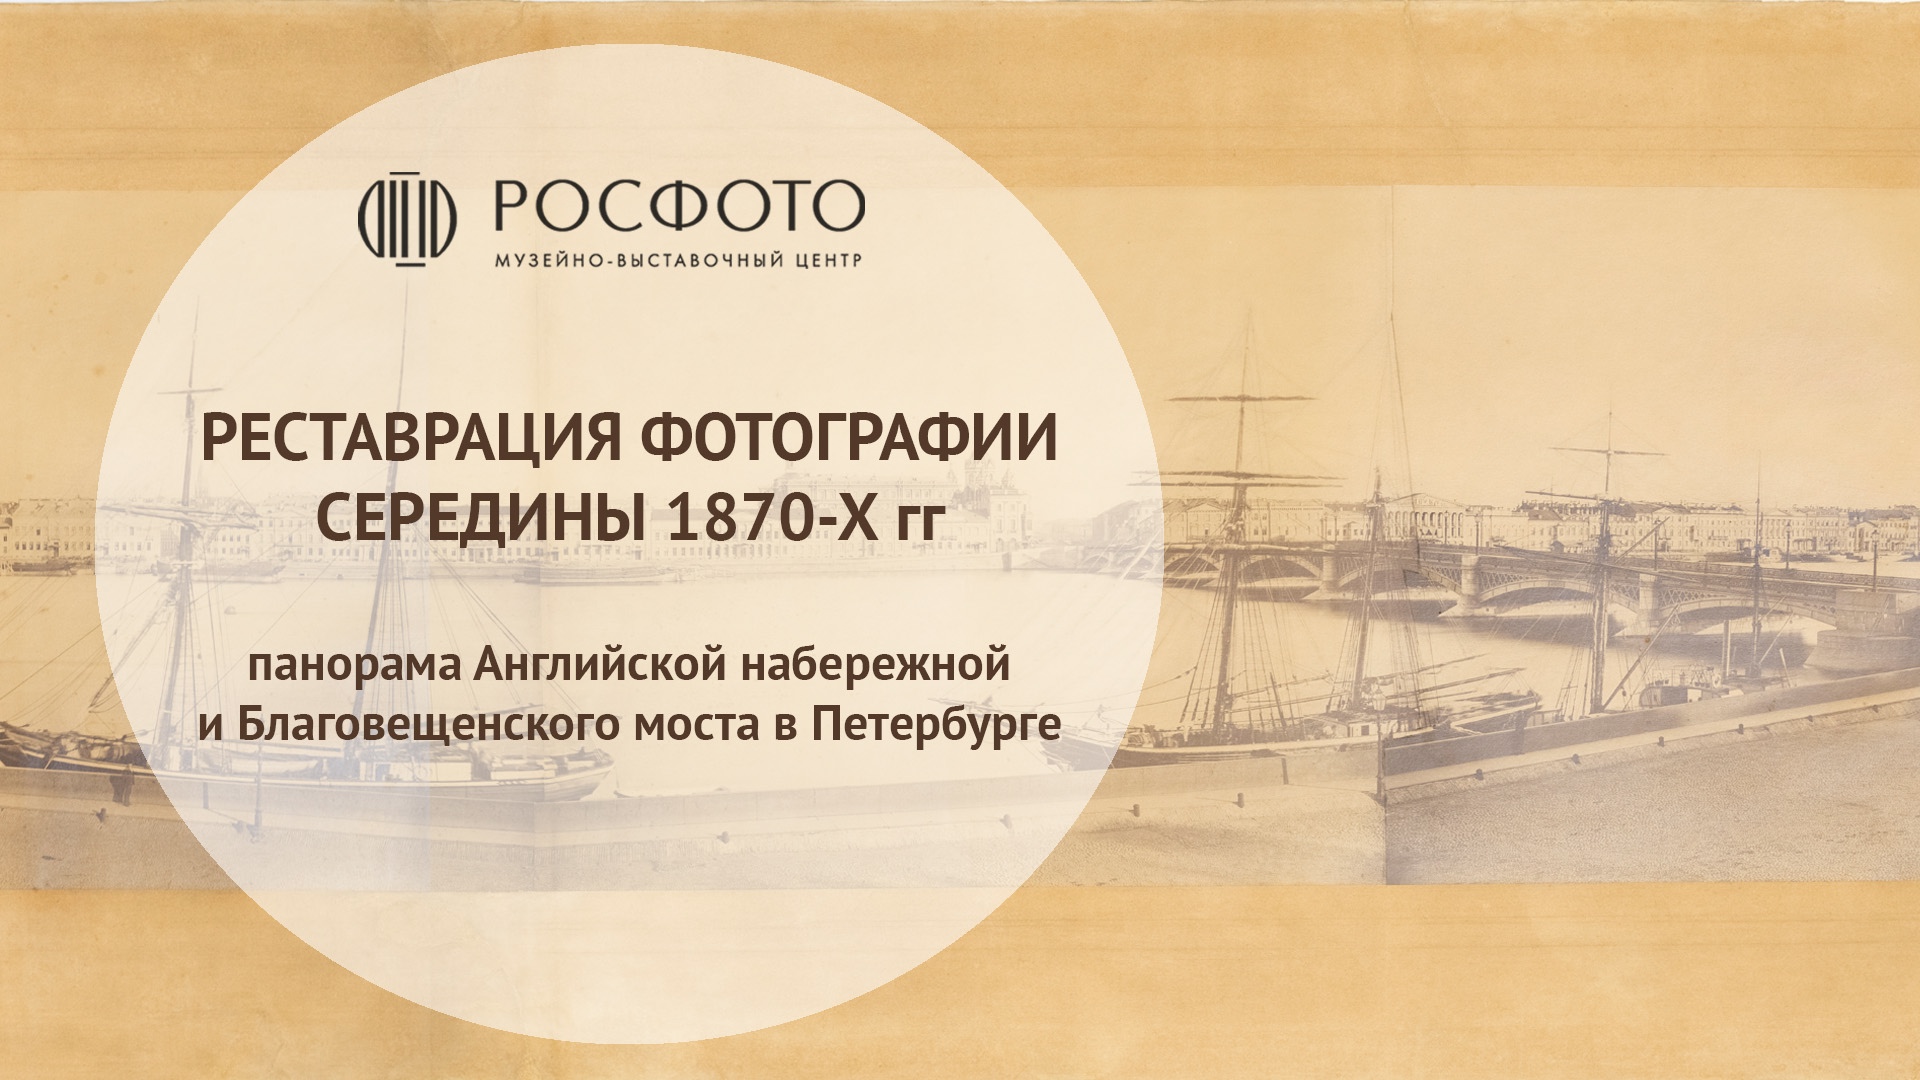 Документальный фильм РОСФОТО «Реставрация фотографии середины 1870-х годов» || 2022